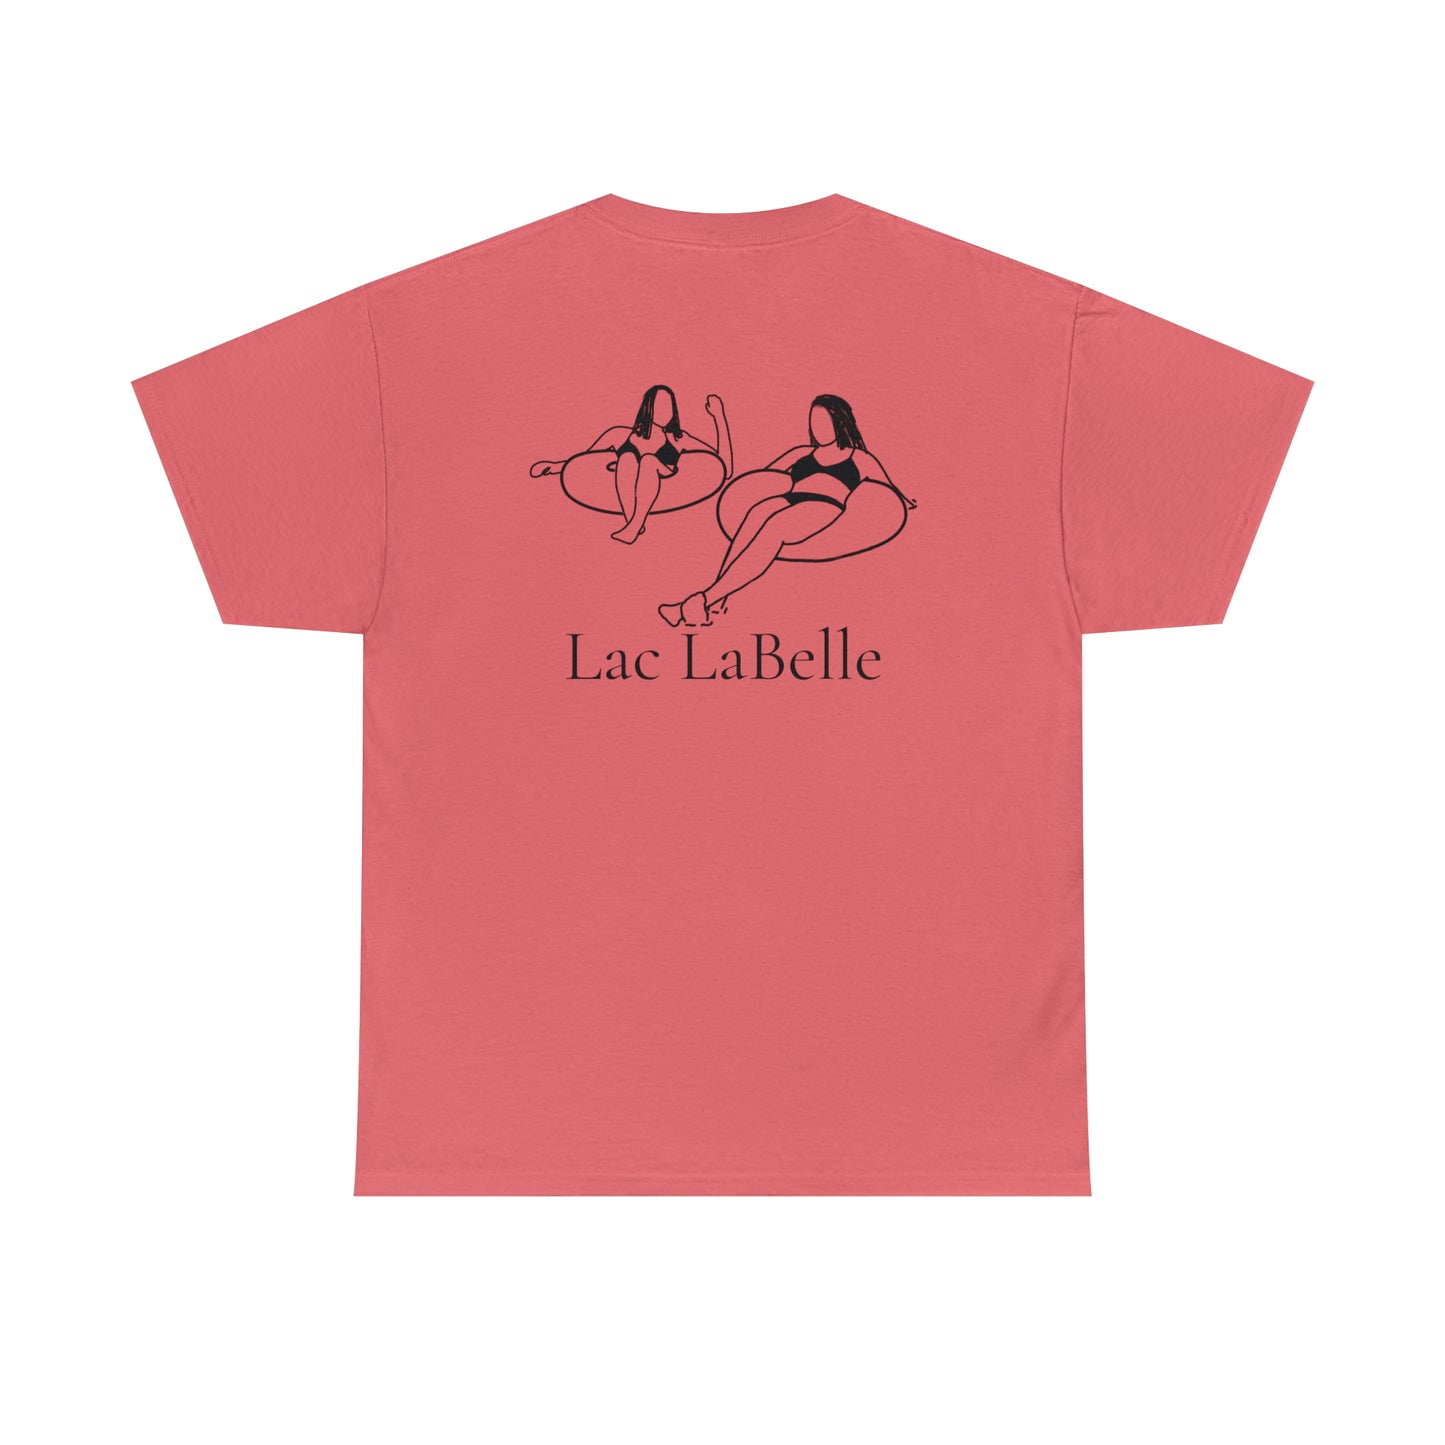 Inner Tube Girls - Lac LaBelle Unisex Heavy Tee Shirt